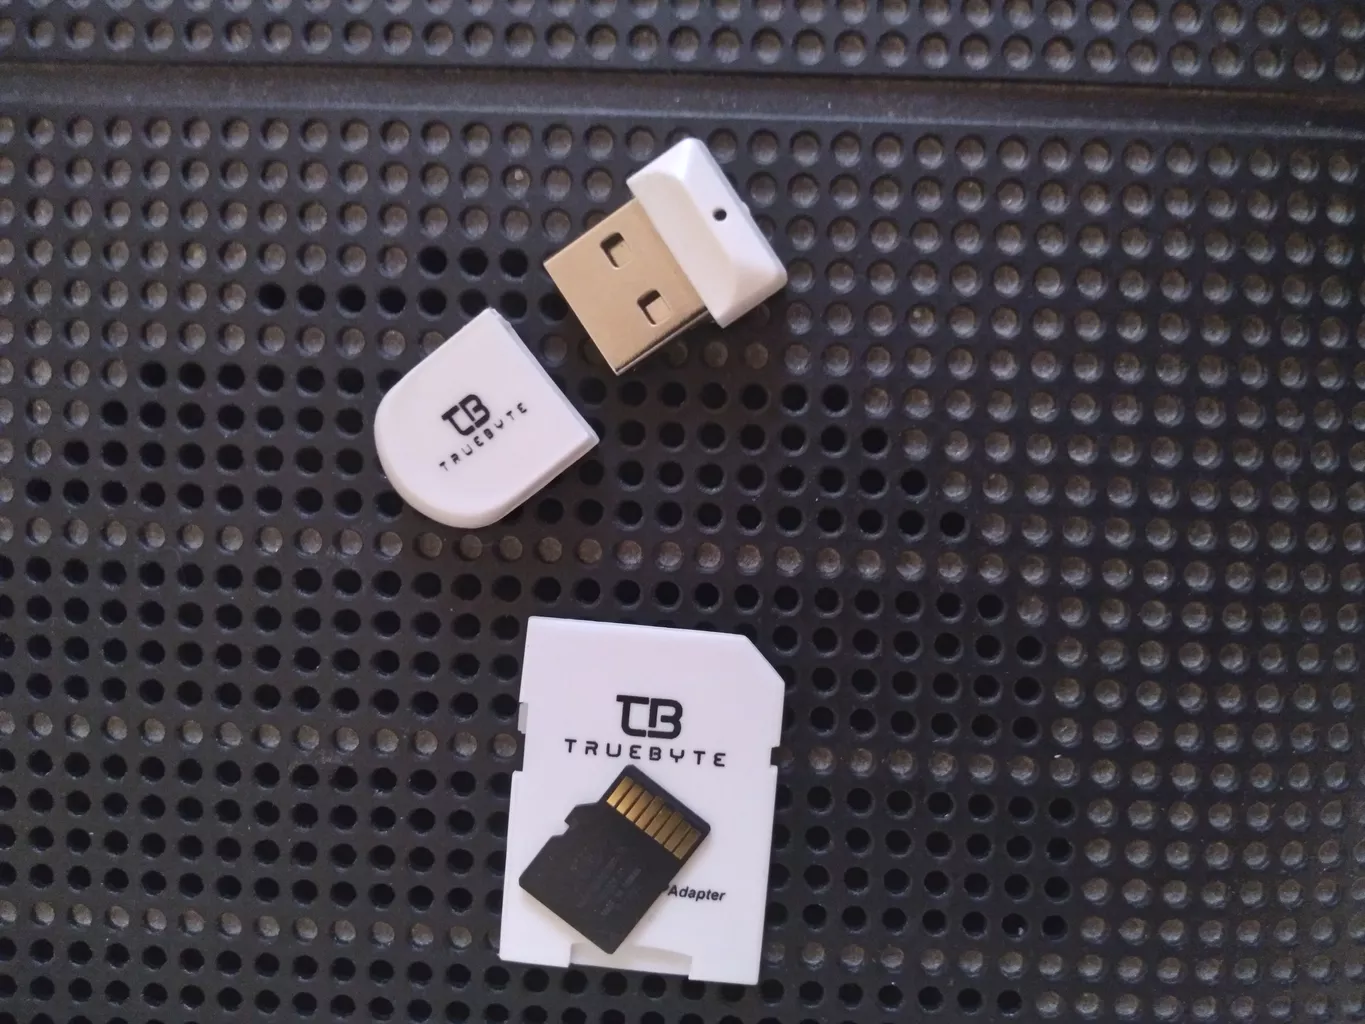 کارت حافظه microSDXC تروبایت مدل A2-V30-633X کلاس 10 استاندارد UHS-I U3 سرعت 95MBps ظرفیت 128گیگابایت به همراه کارت خوان